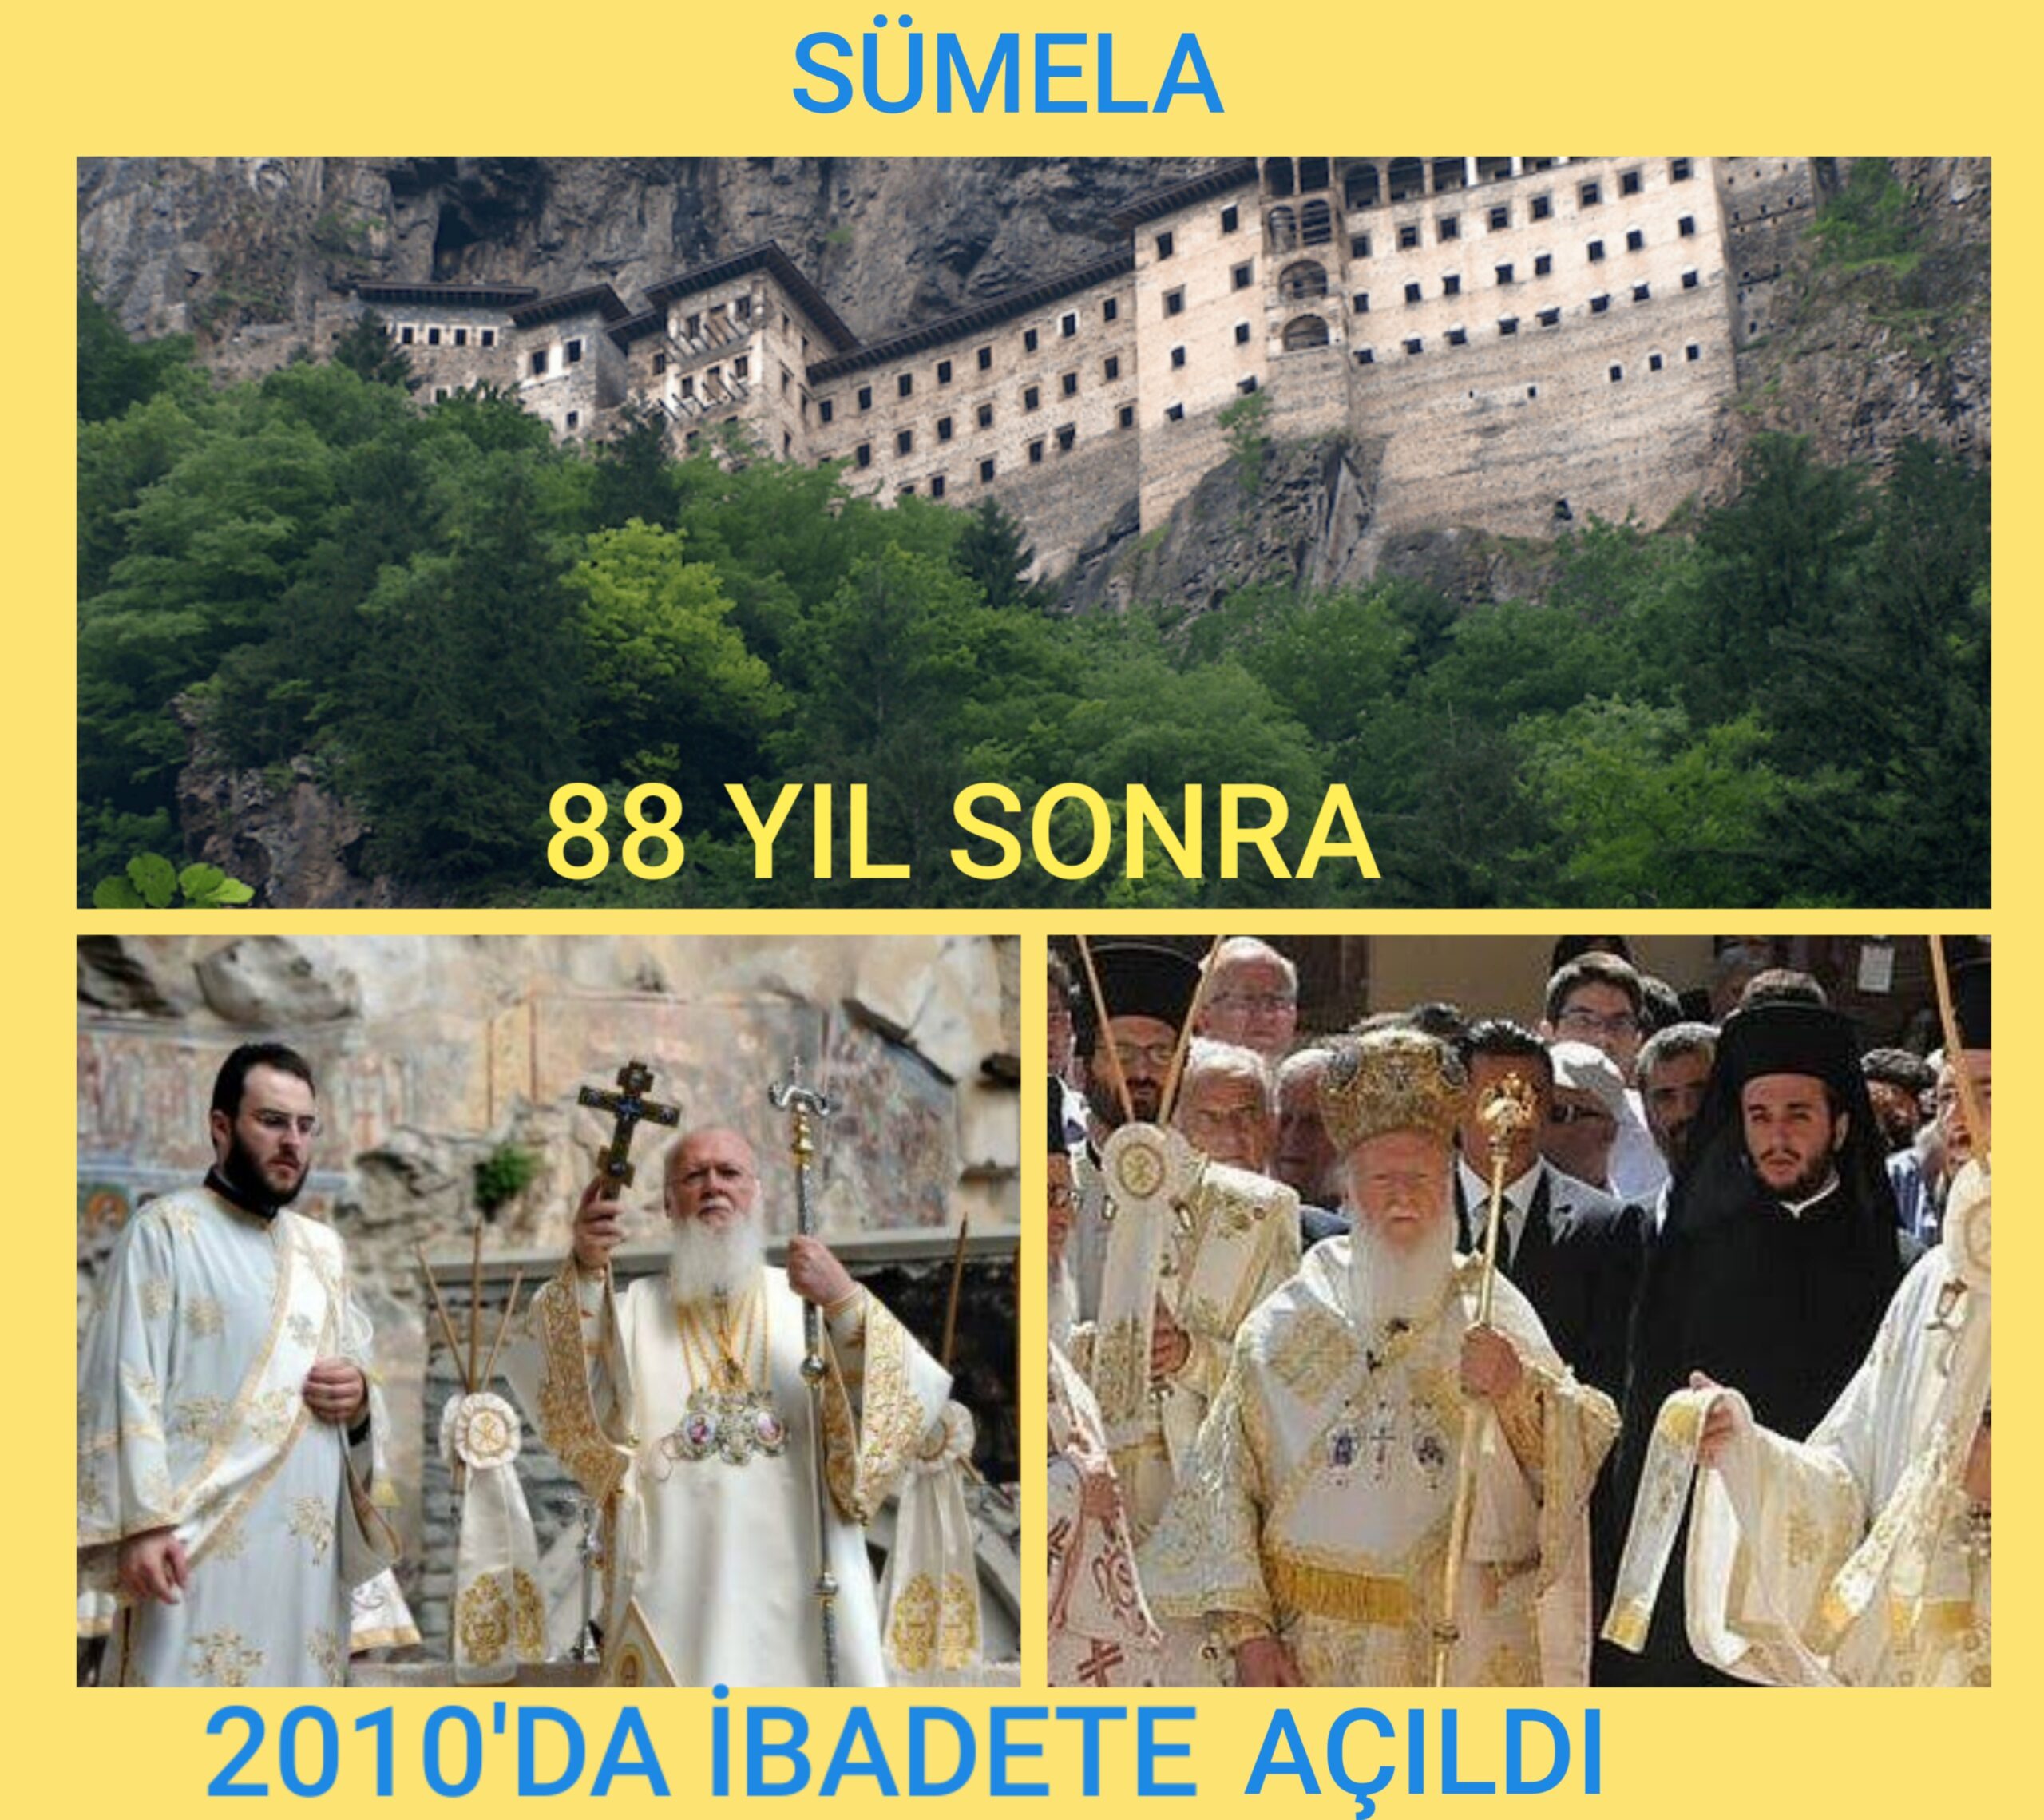 Hz Fatih’in Trabzon’un Fetih Gününde,Sümela’da Ayın yapılamaz!